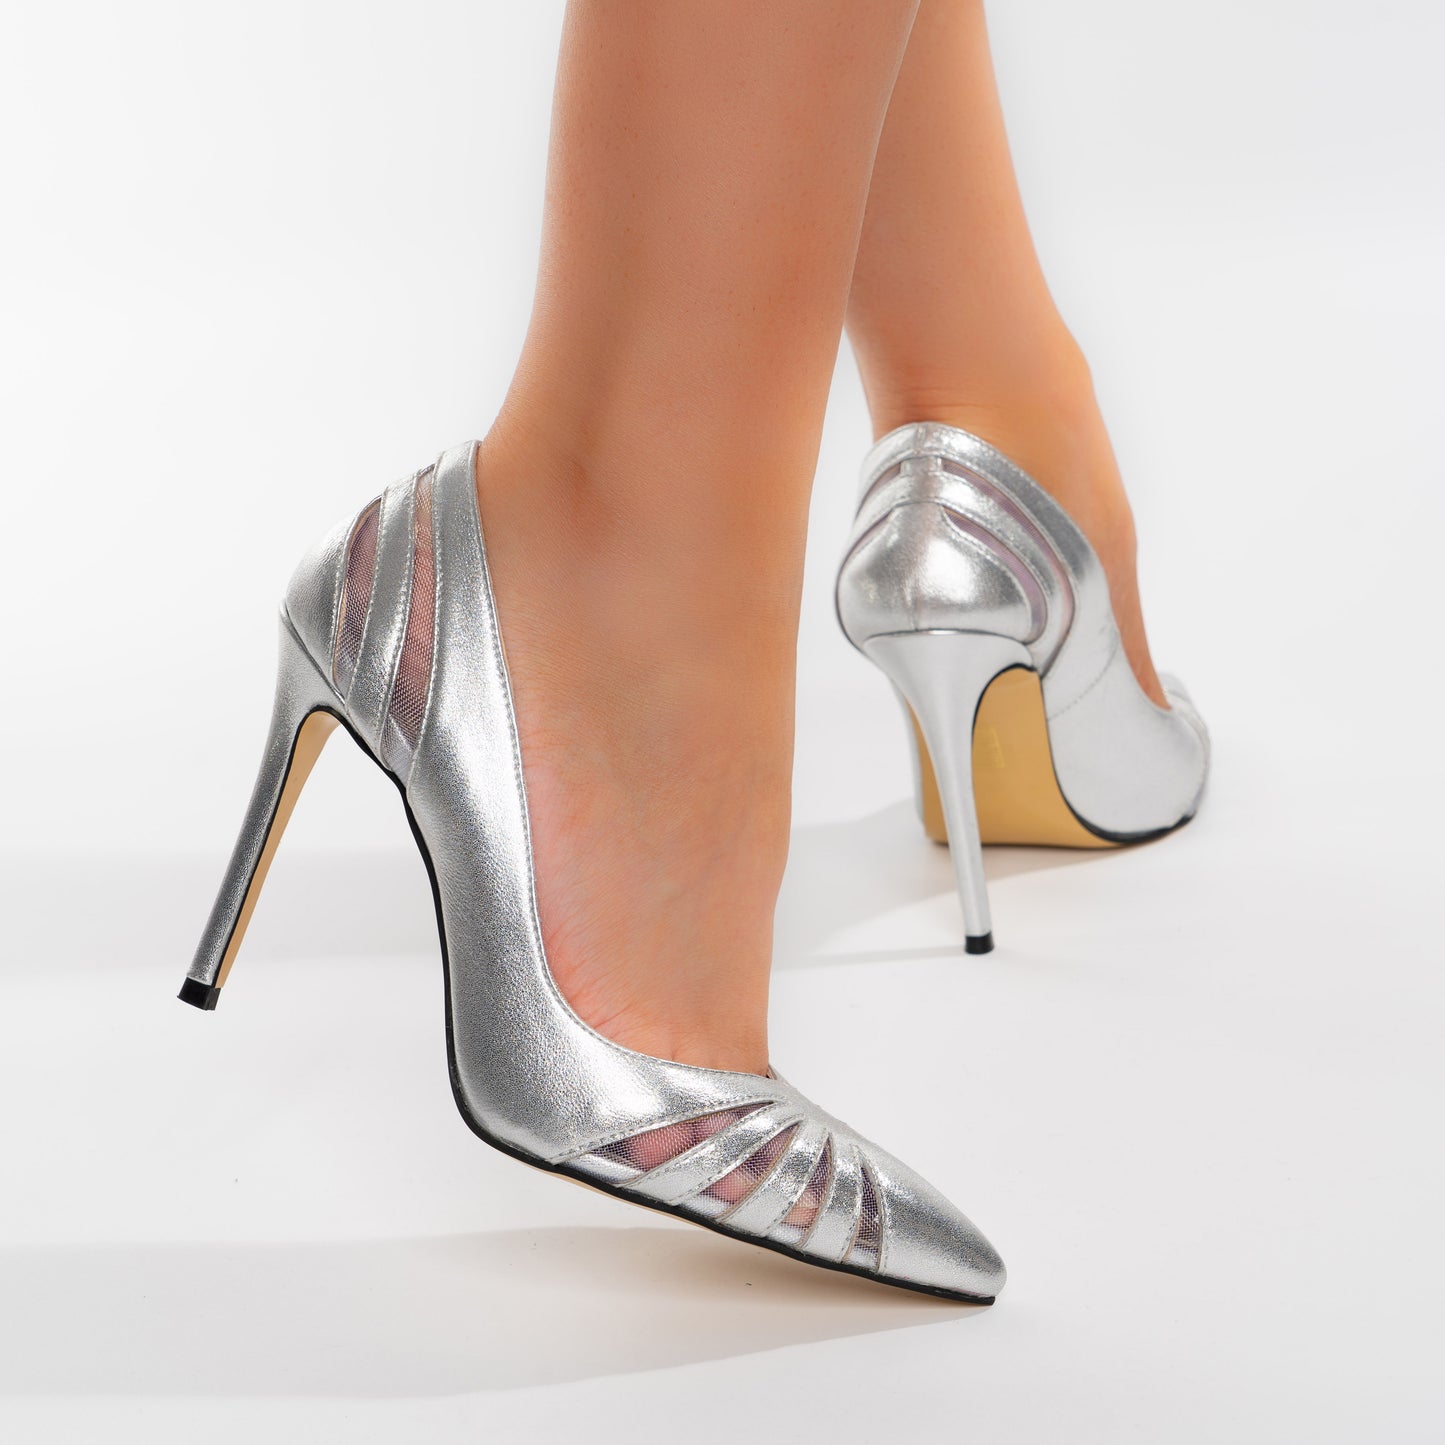 Pantofi Eleganți Stiletto Din Piele Naturală Metalizată Luna Silver